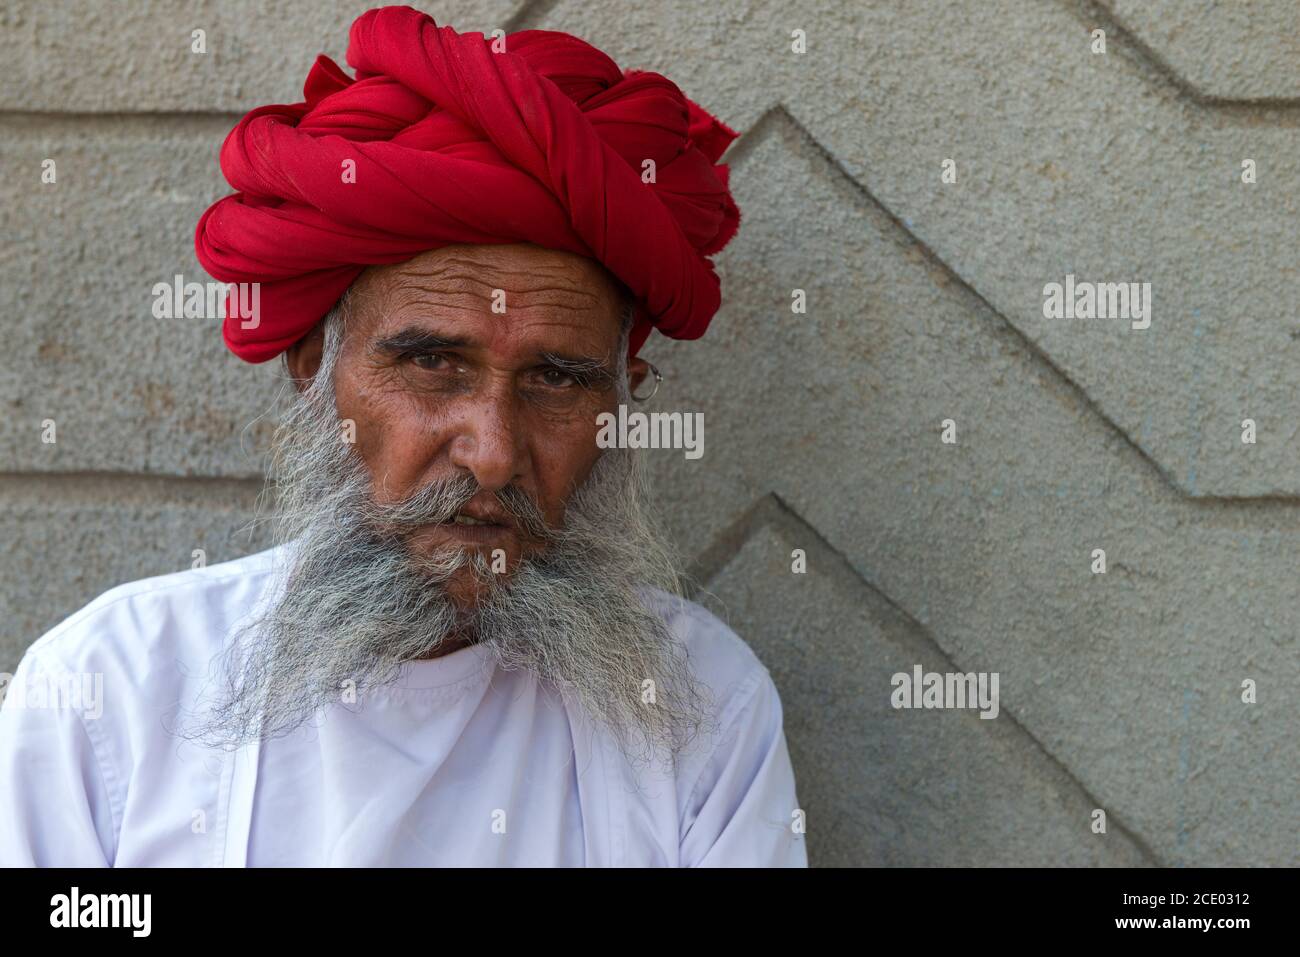 Indiano, membro della tribù Rabari, con un turbante rosso, Bera, Rajasthan, India Foto Stock